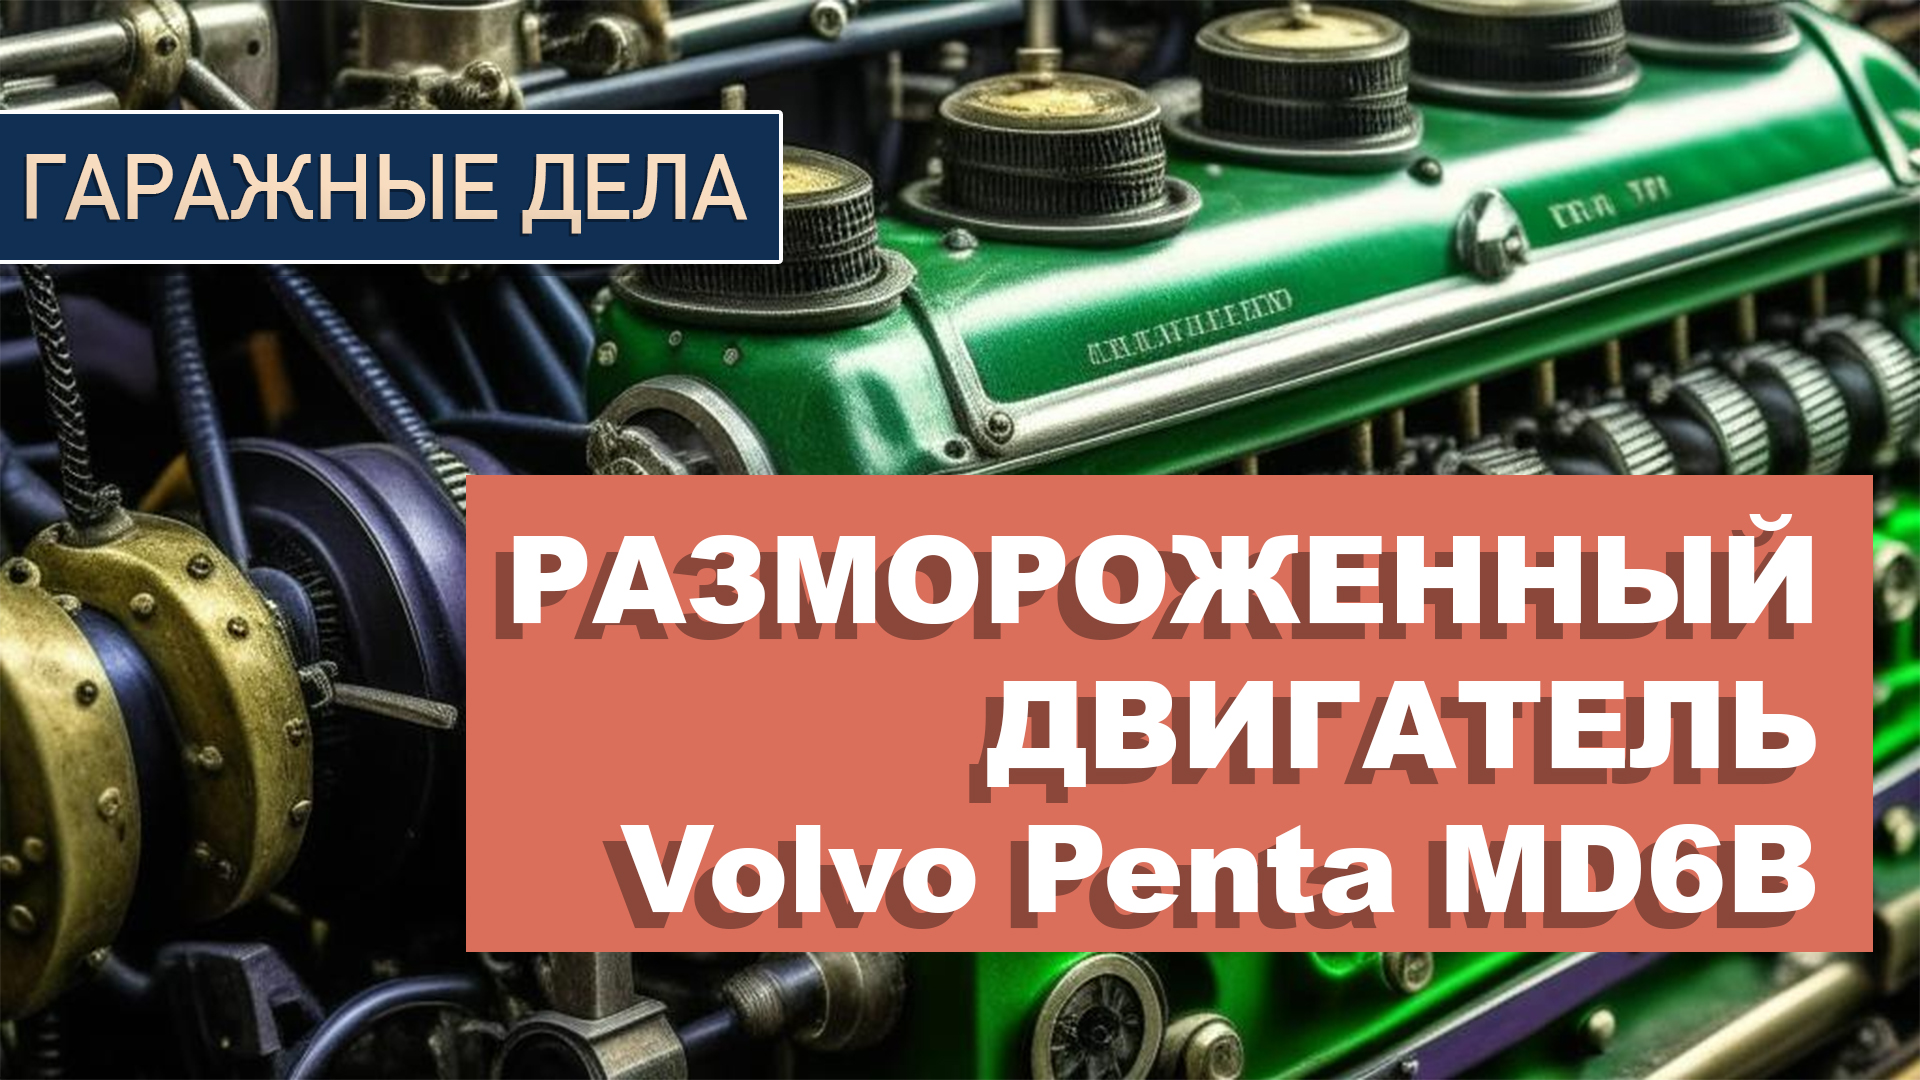 Восстановление и ремонт размороженного двигателя Volvo Penta md6b | Часть 1 | Как снять двигатель?